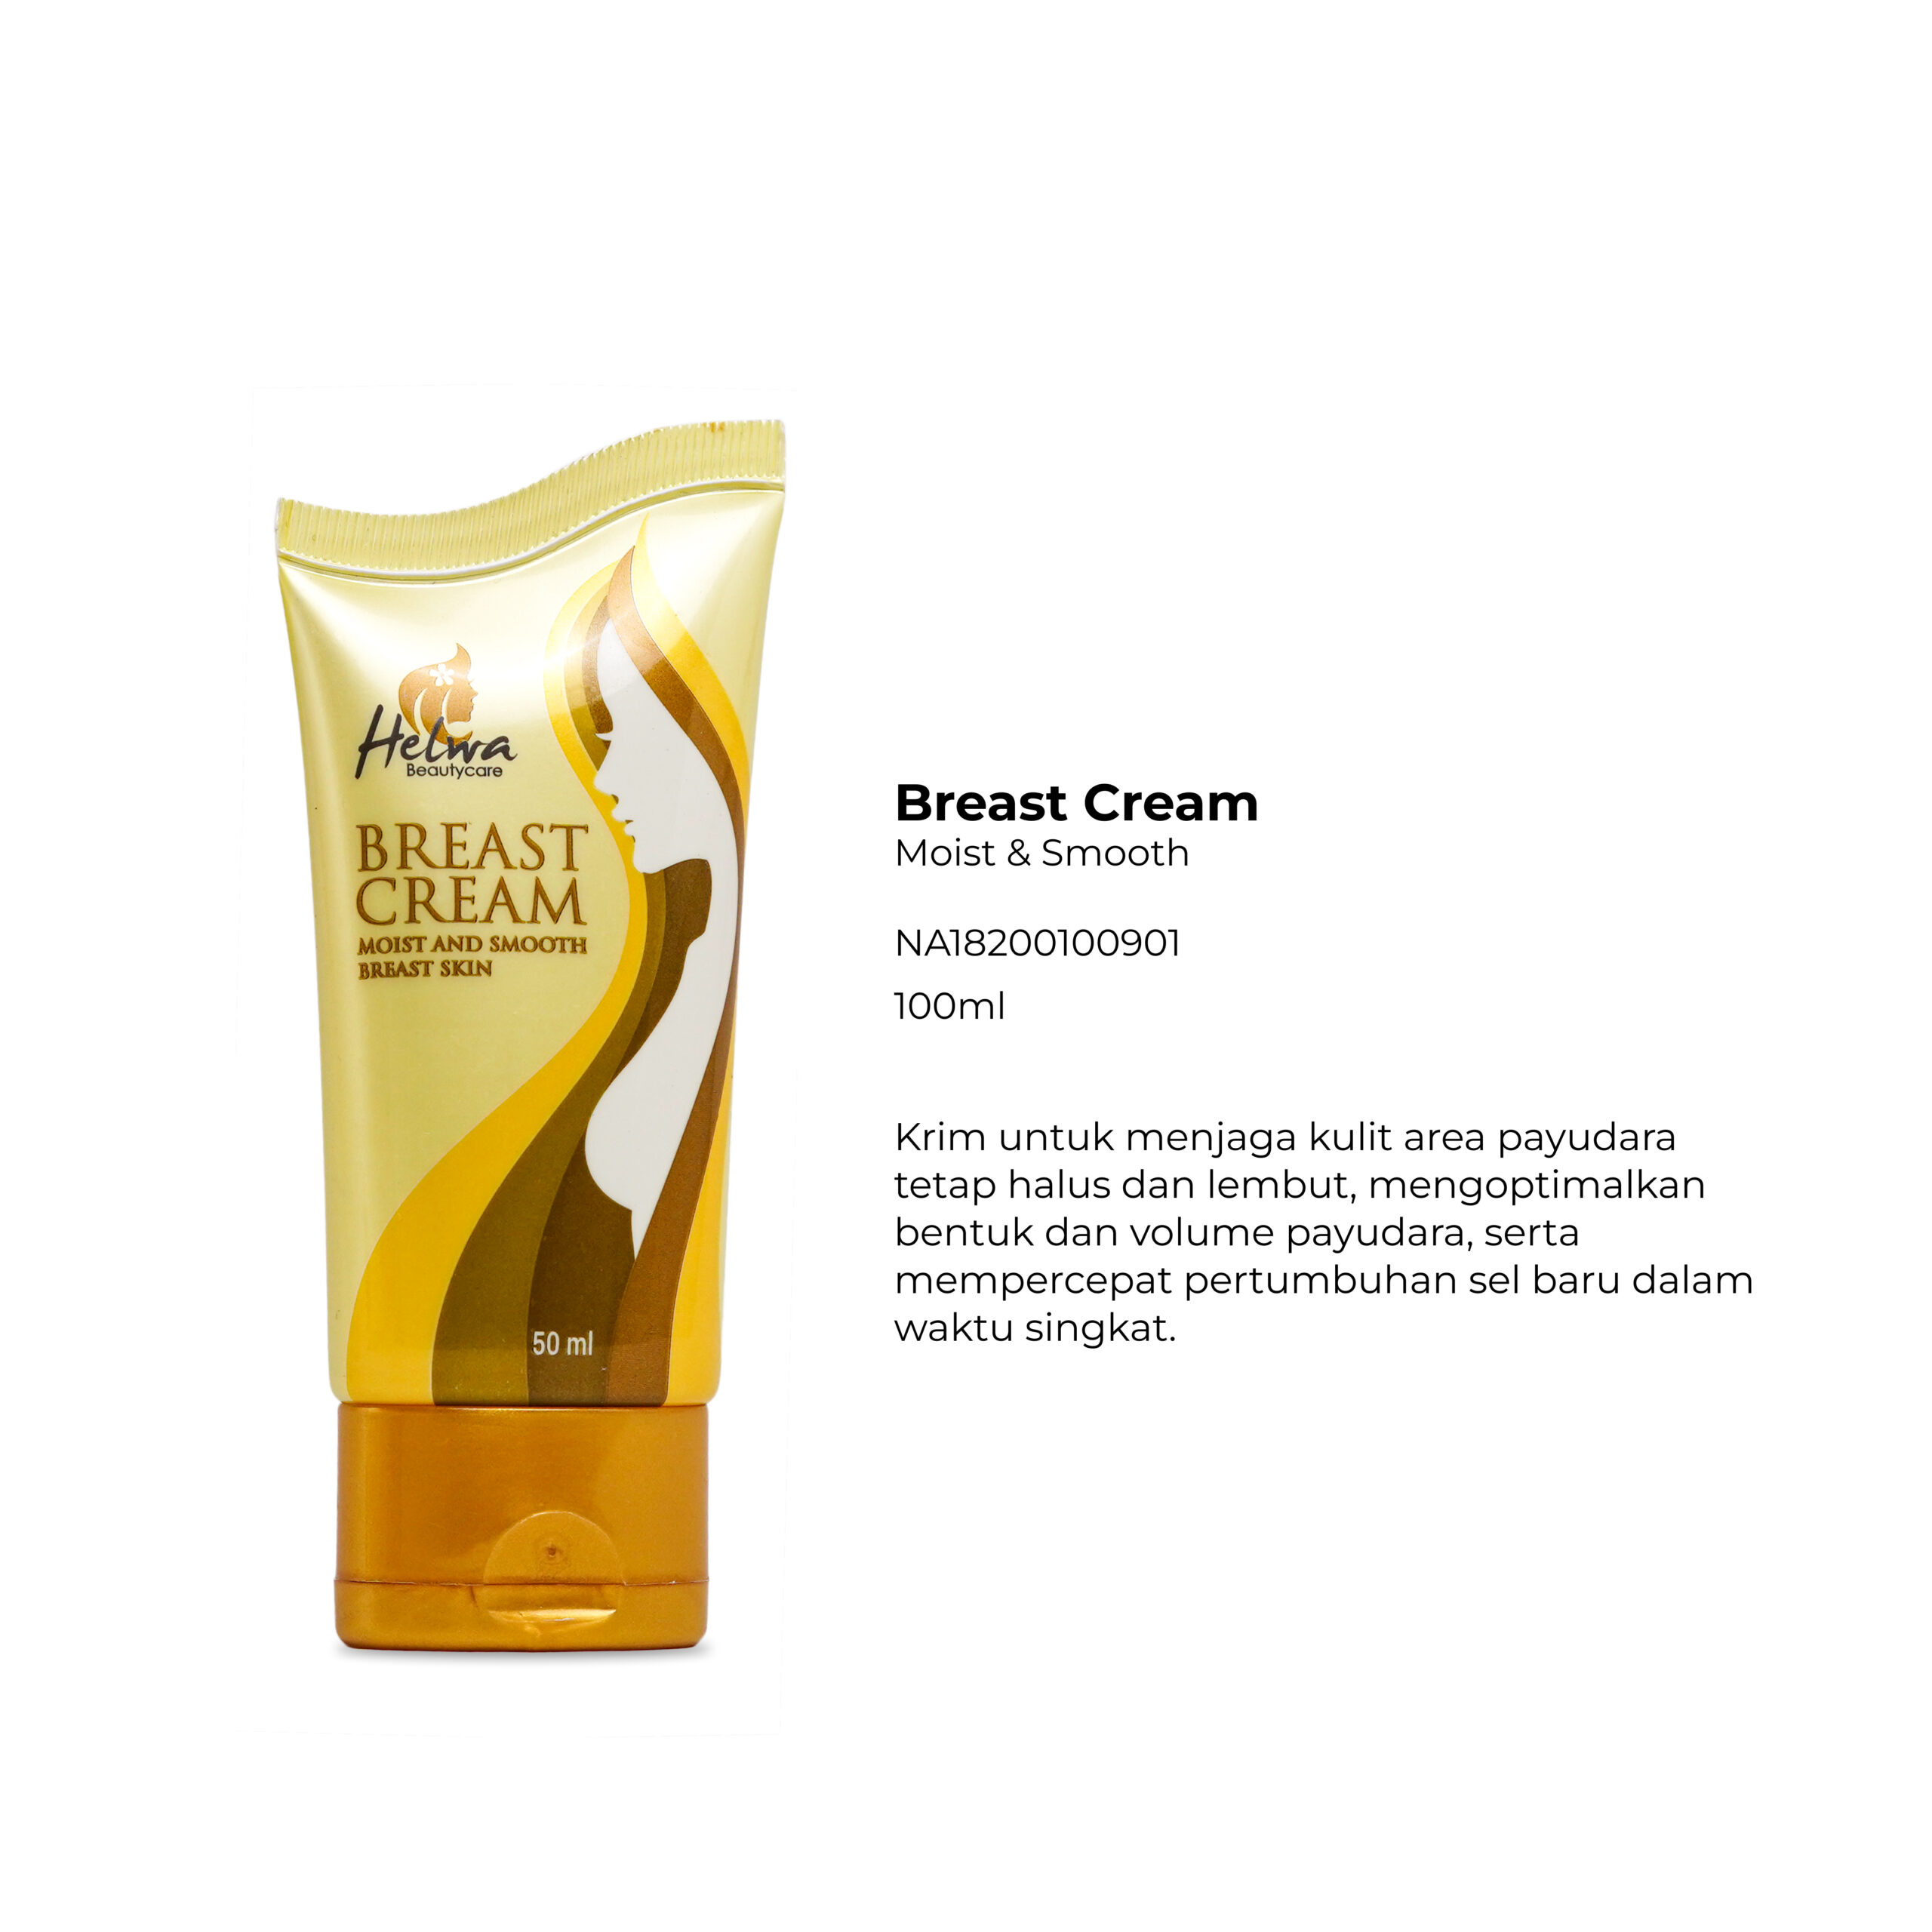 Helwa Breast Cream